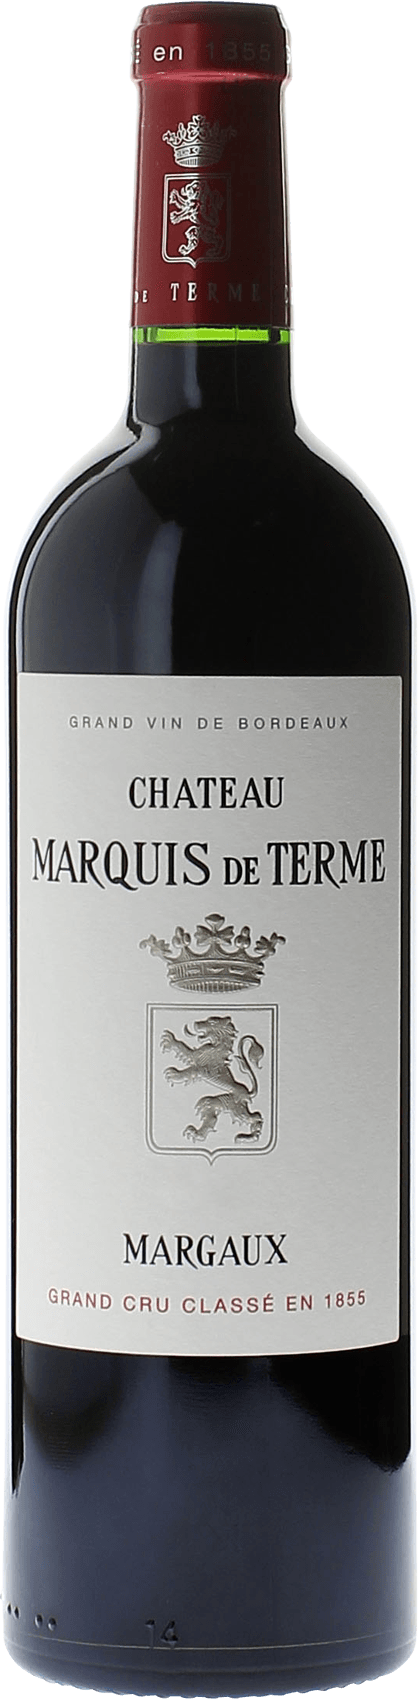 Marquis de terme 2021 4me Grand cru class Margaux, Bordeaux rouge